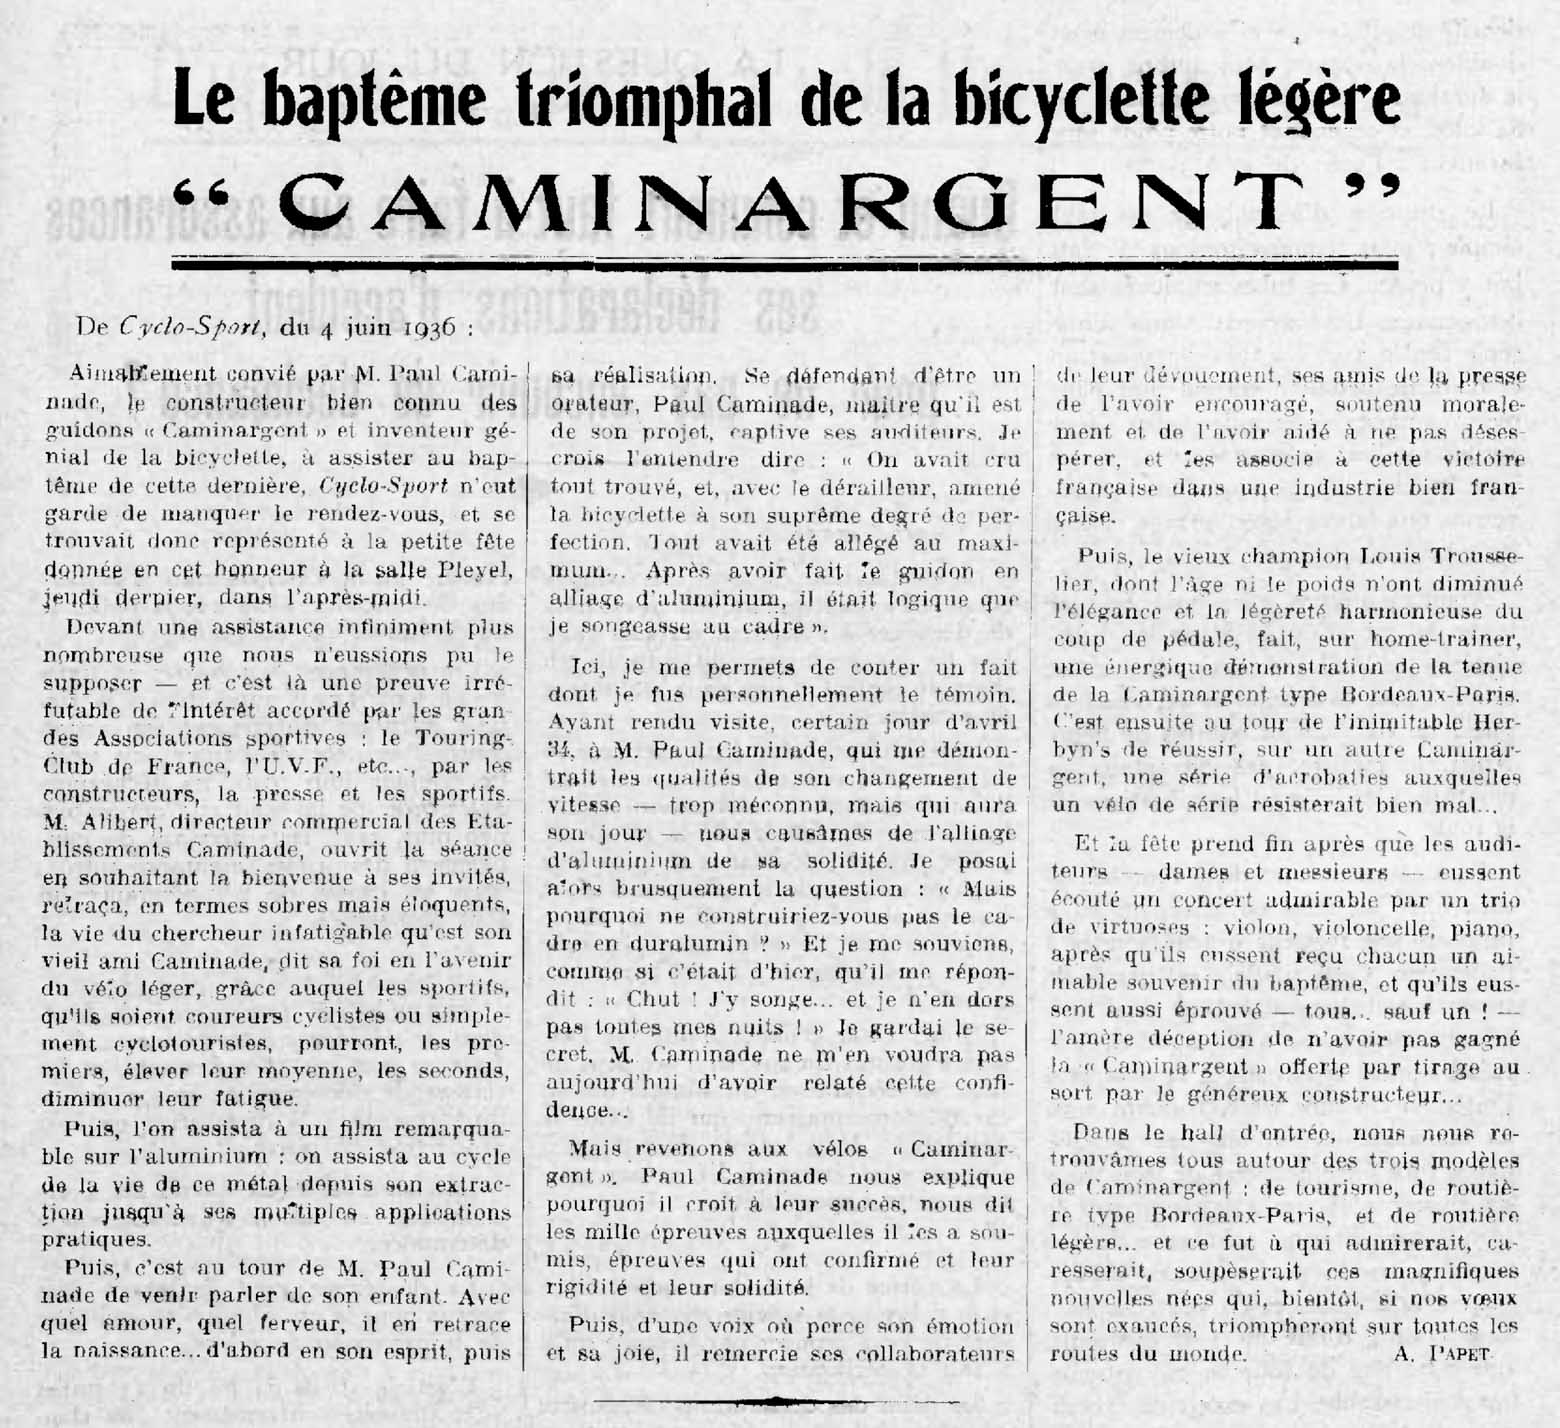 L'Industrie des Cycles et Automobiles July 1936 - La bapteme triomphal main image